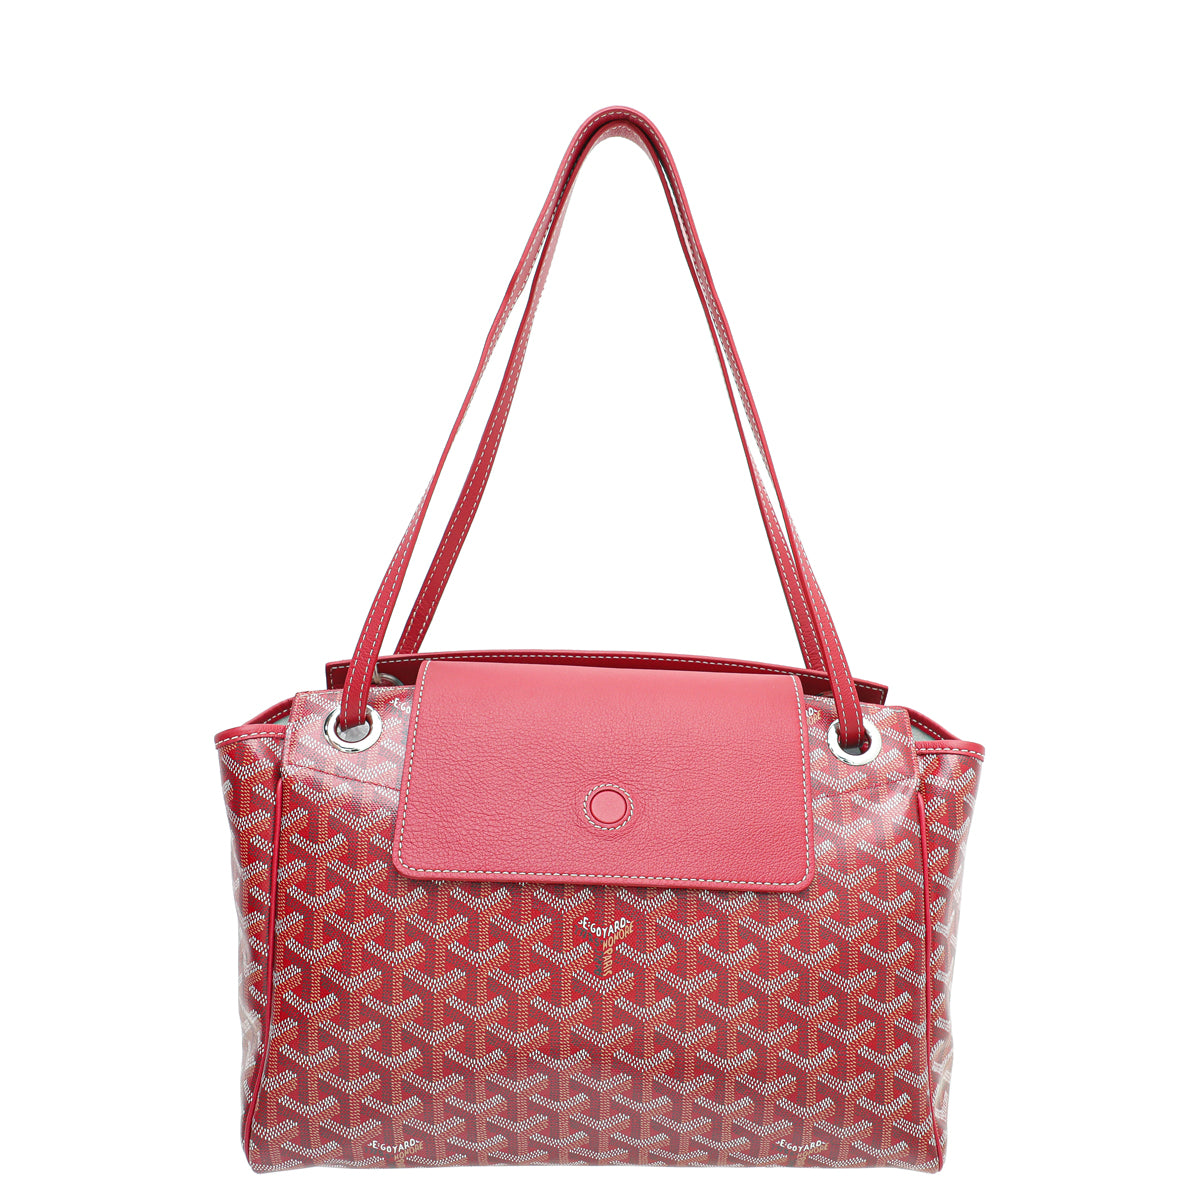 Goyard Red Rouette Souple PM Bag – The Closet